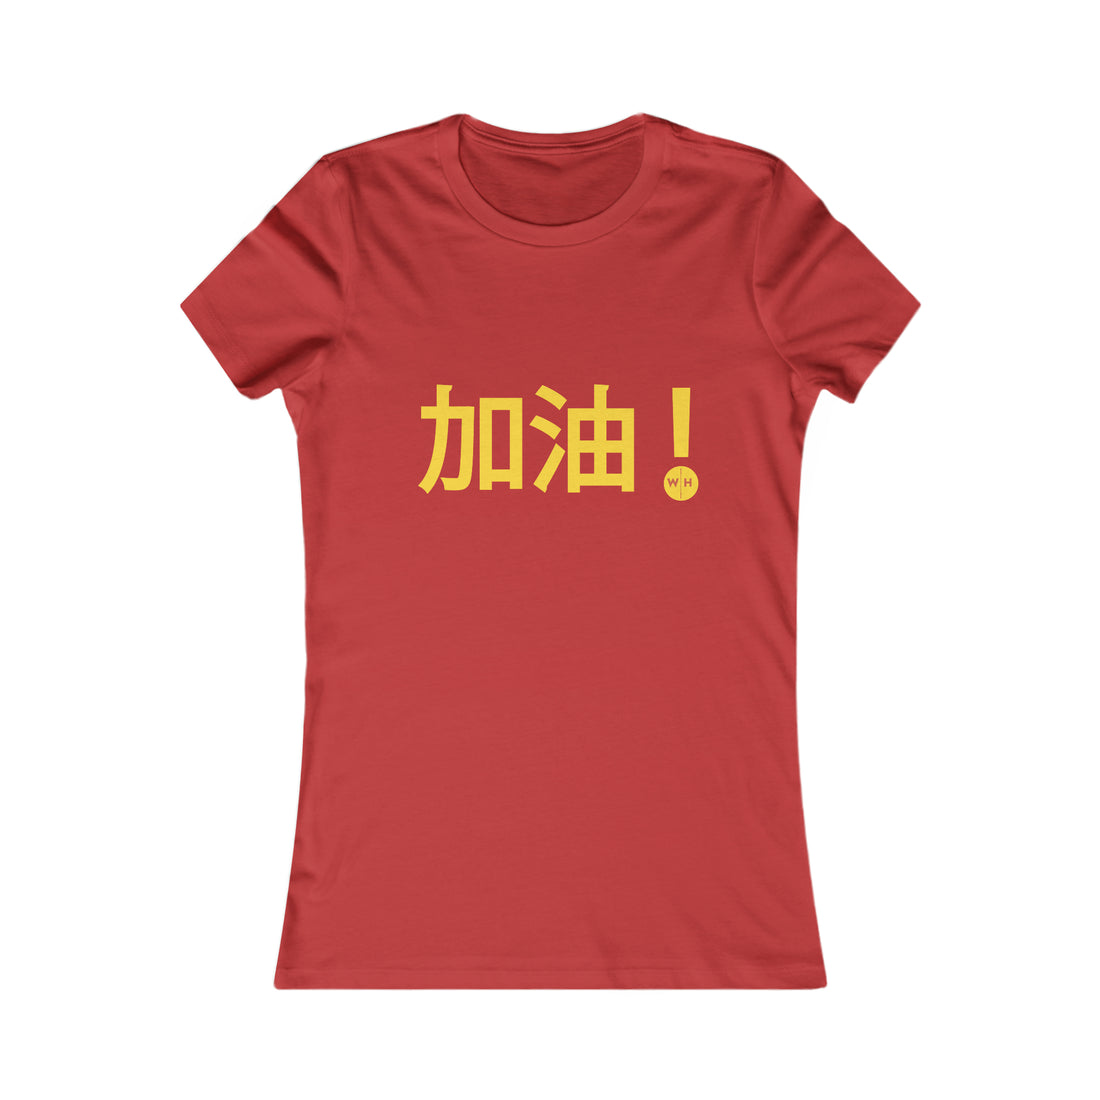 加油! Chinese Weightlifting | Women&